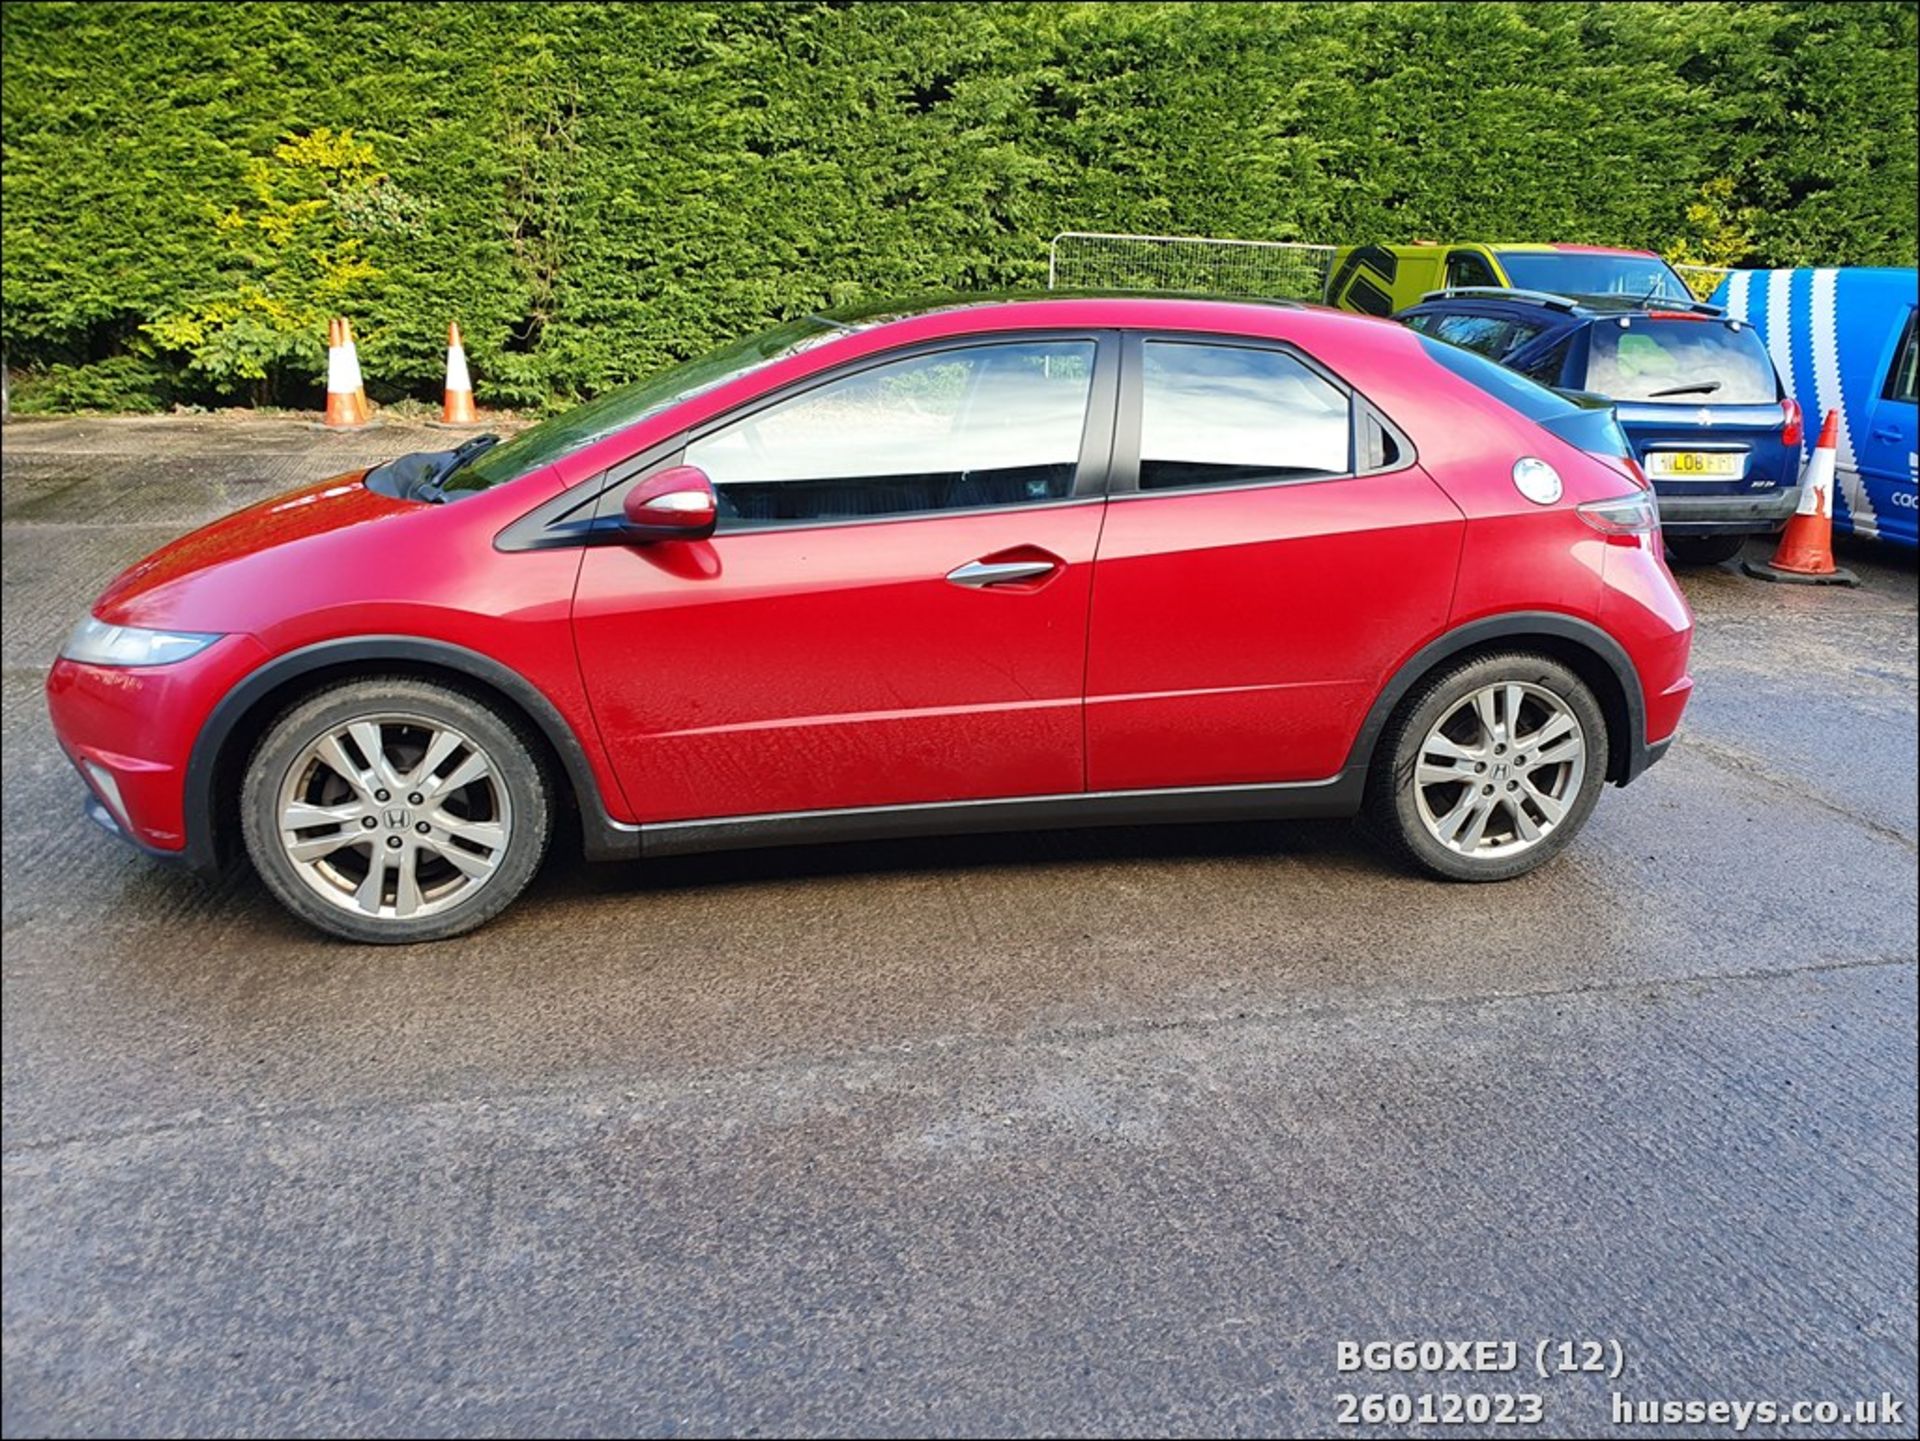 10/60 HONDA CIVIC ES I-CTDI - 2204cc 5dr Hatchback (Red, 144k) - Image 12 of 45